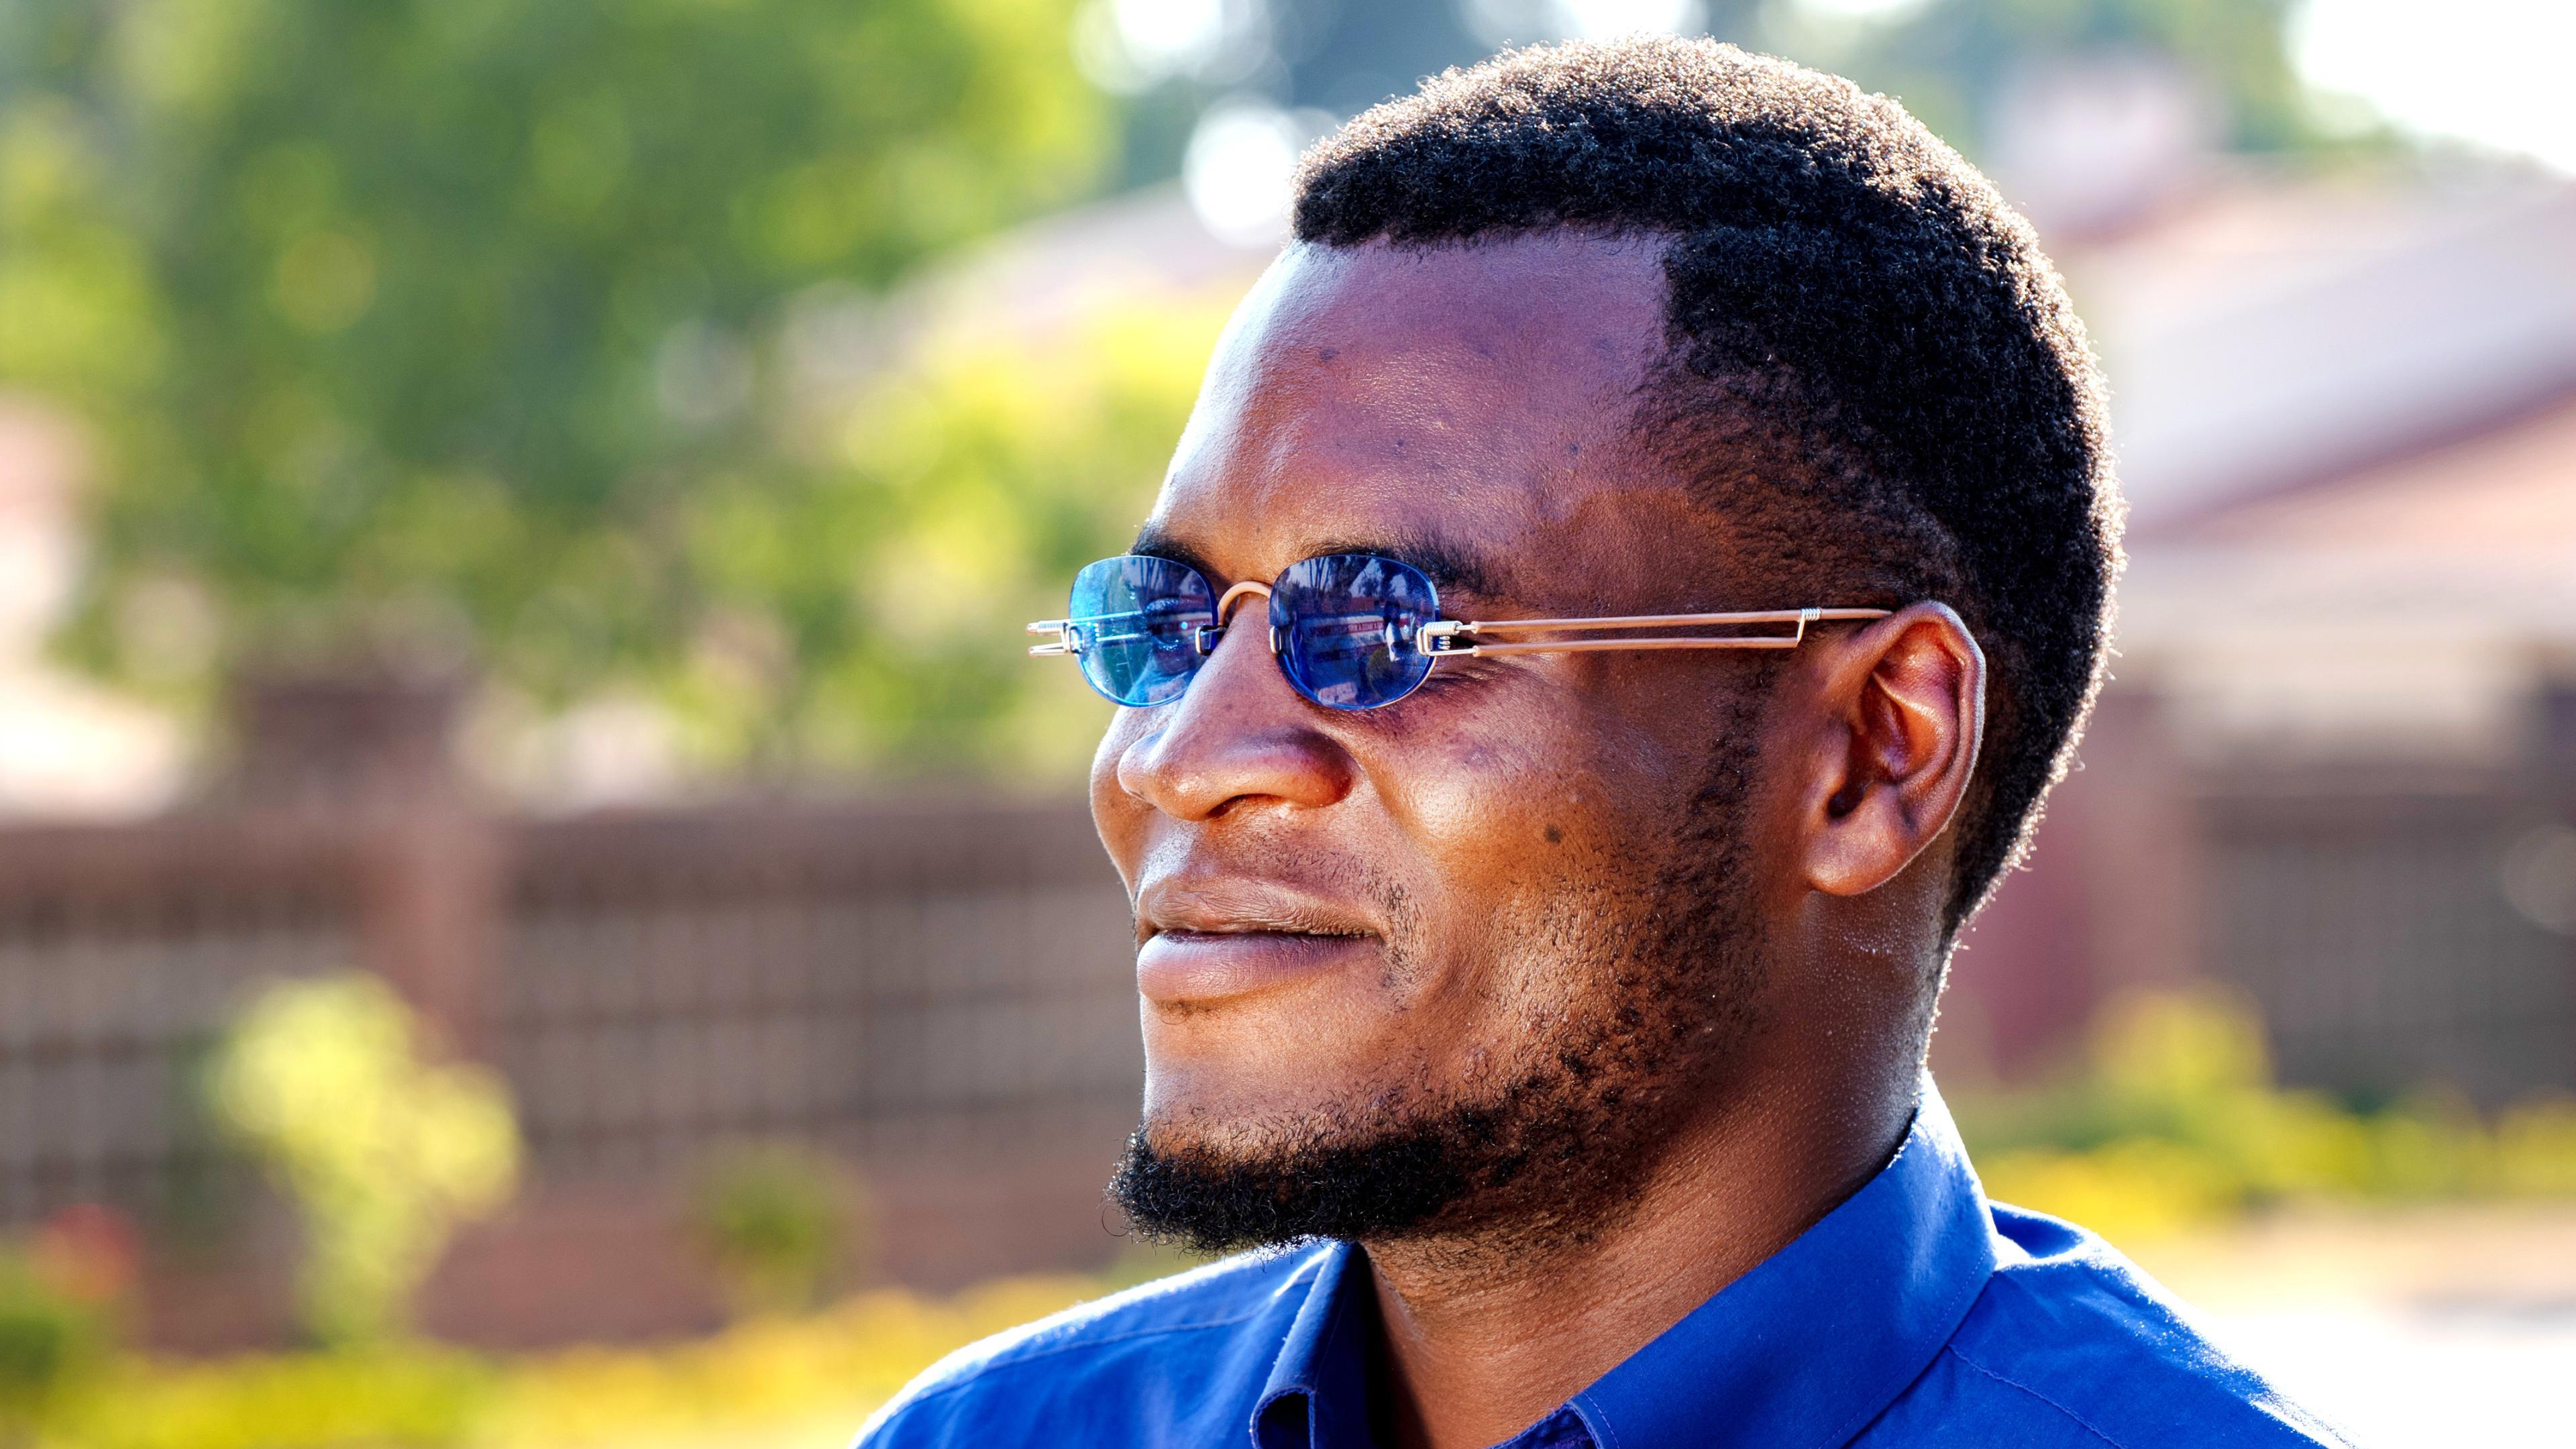 Malawischer Mann mit EinDollarBrille Sonnenbrille mit großen Gläsern